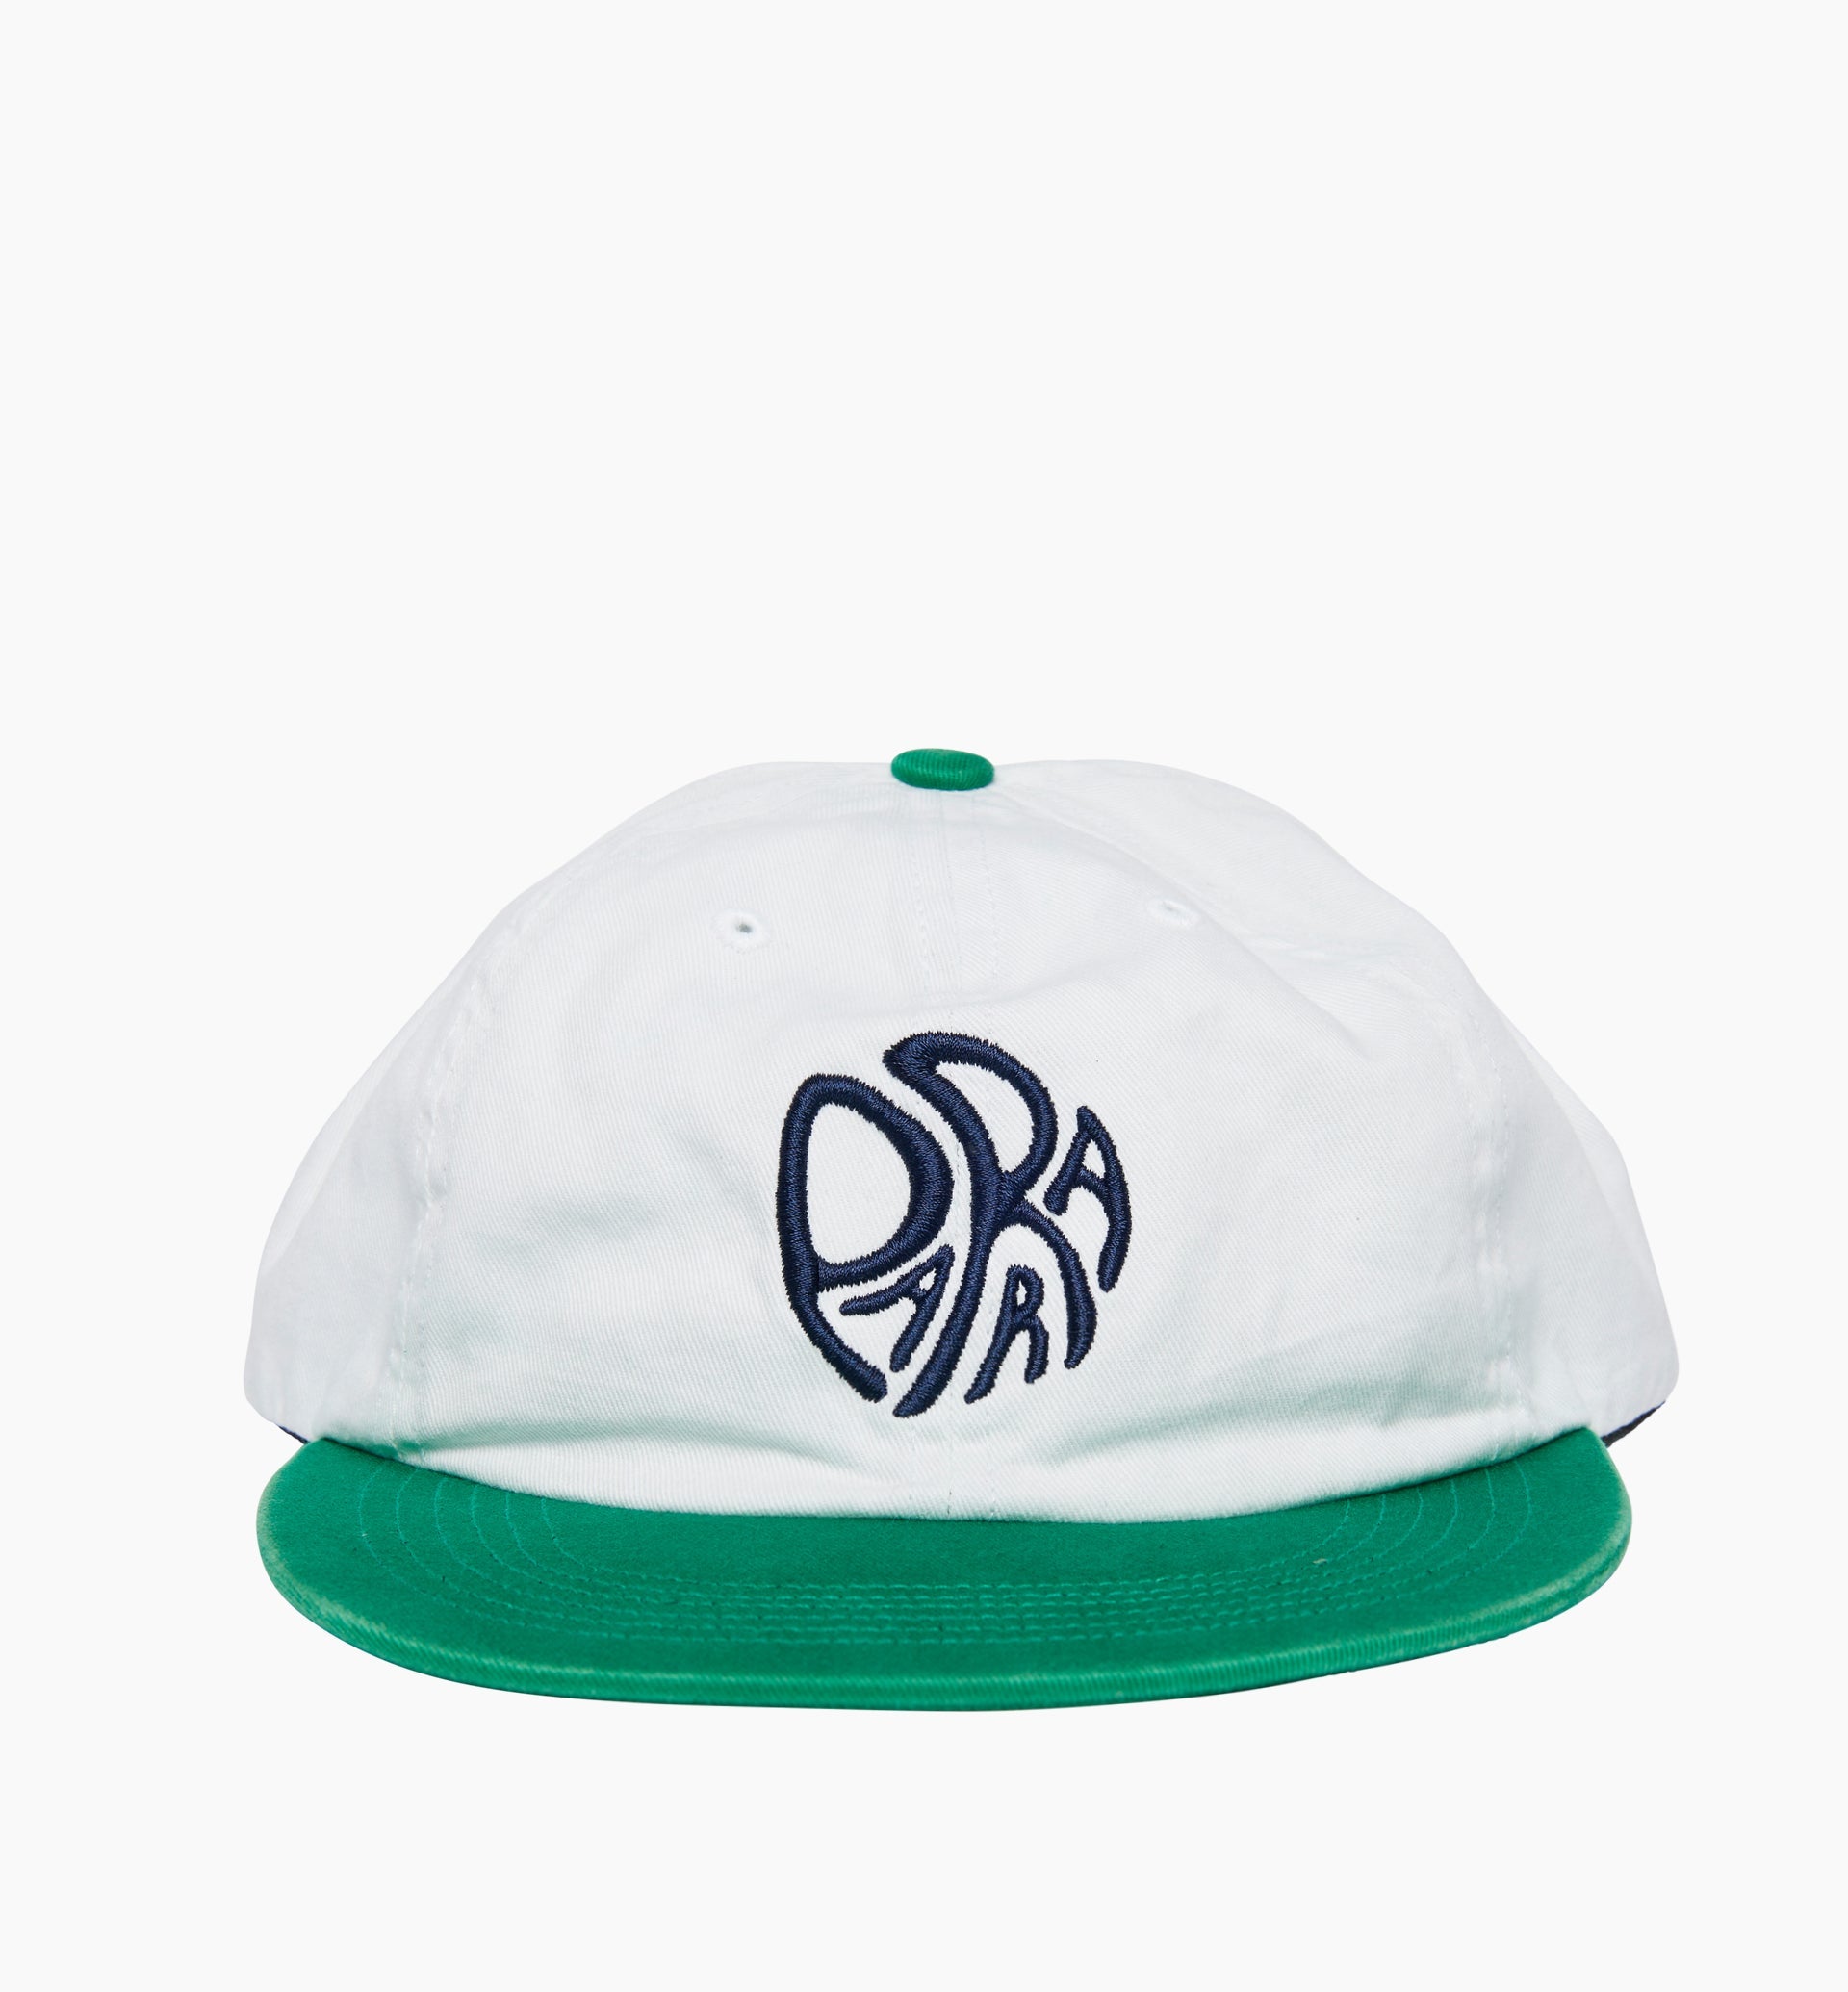 Parra - circle tweak logo 6 panel hat